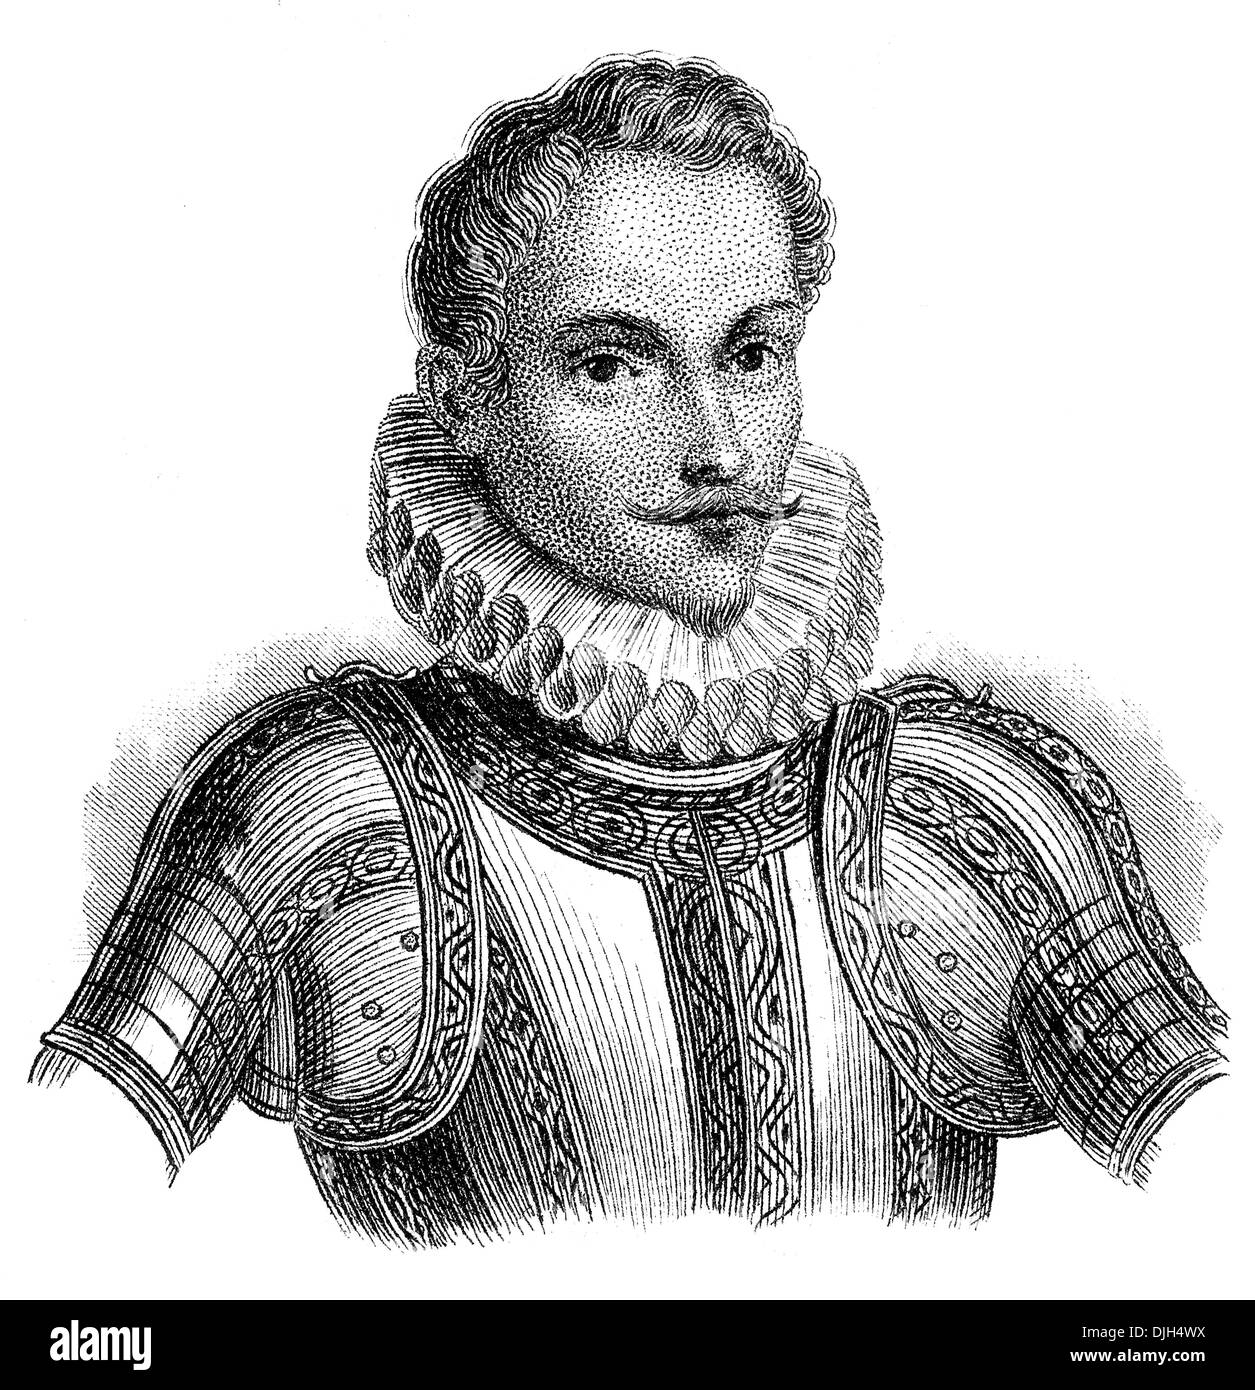 Portrait de Don Juan de Austria ou chevalier Jean d'Autriche, 1547 - 1578, commandant de la flotte espagnole Banque D'Images